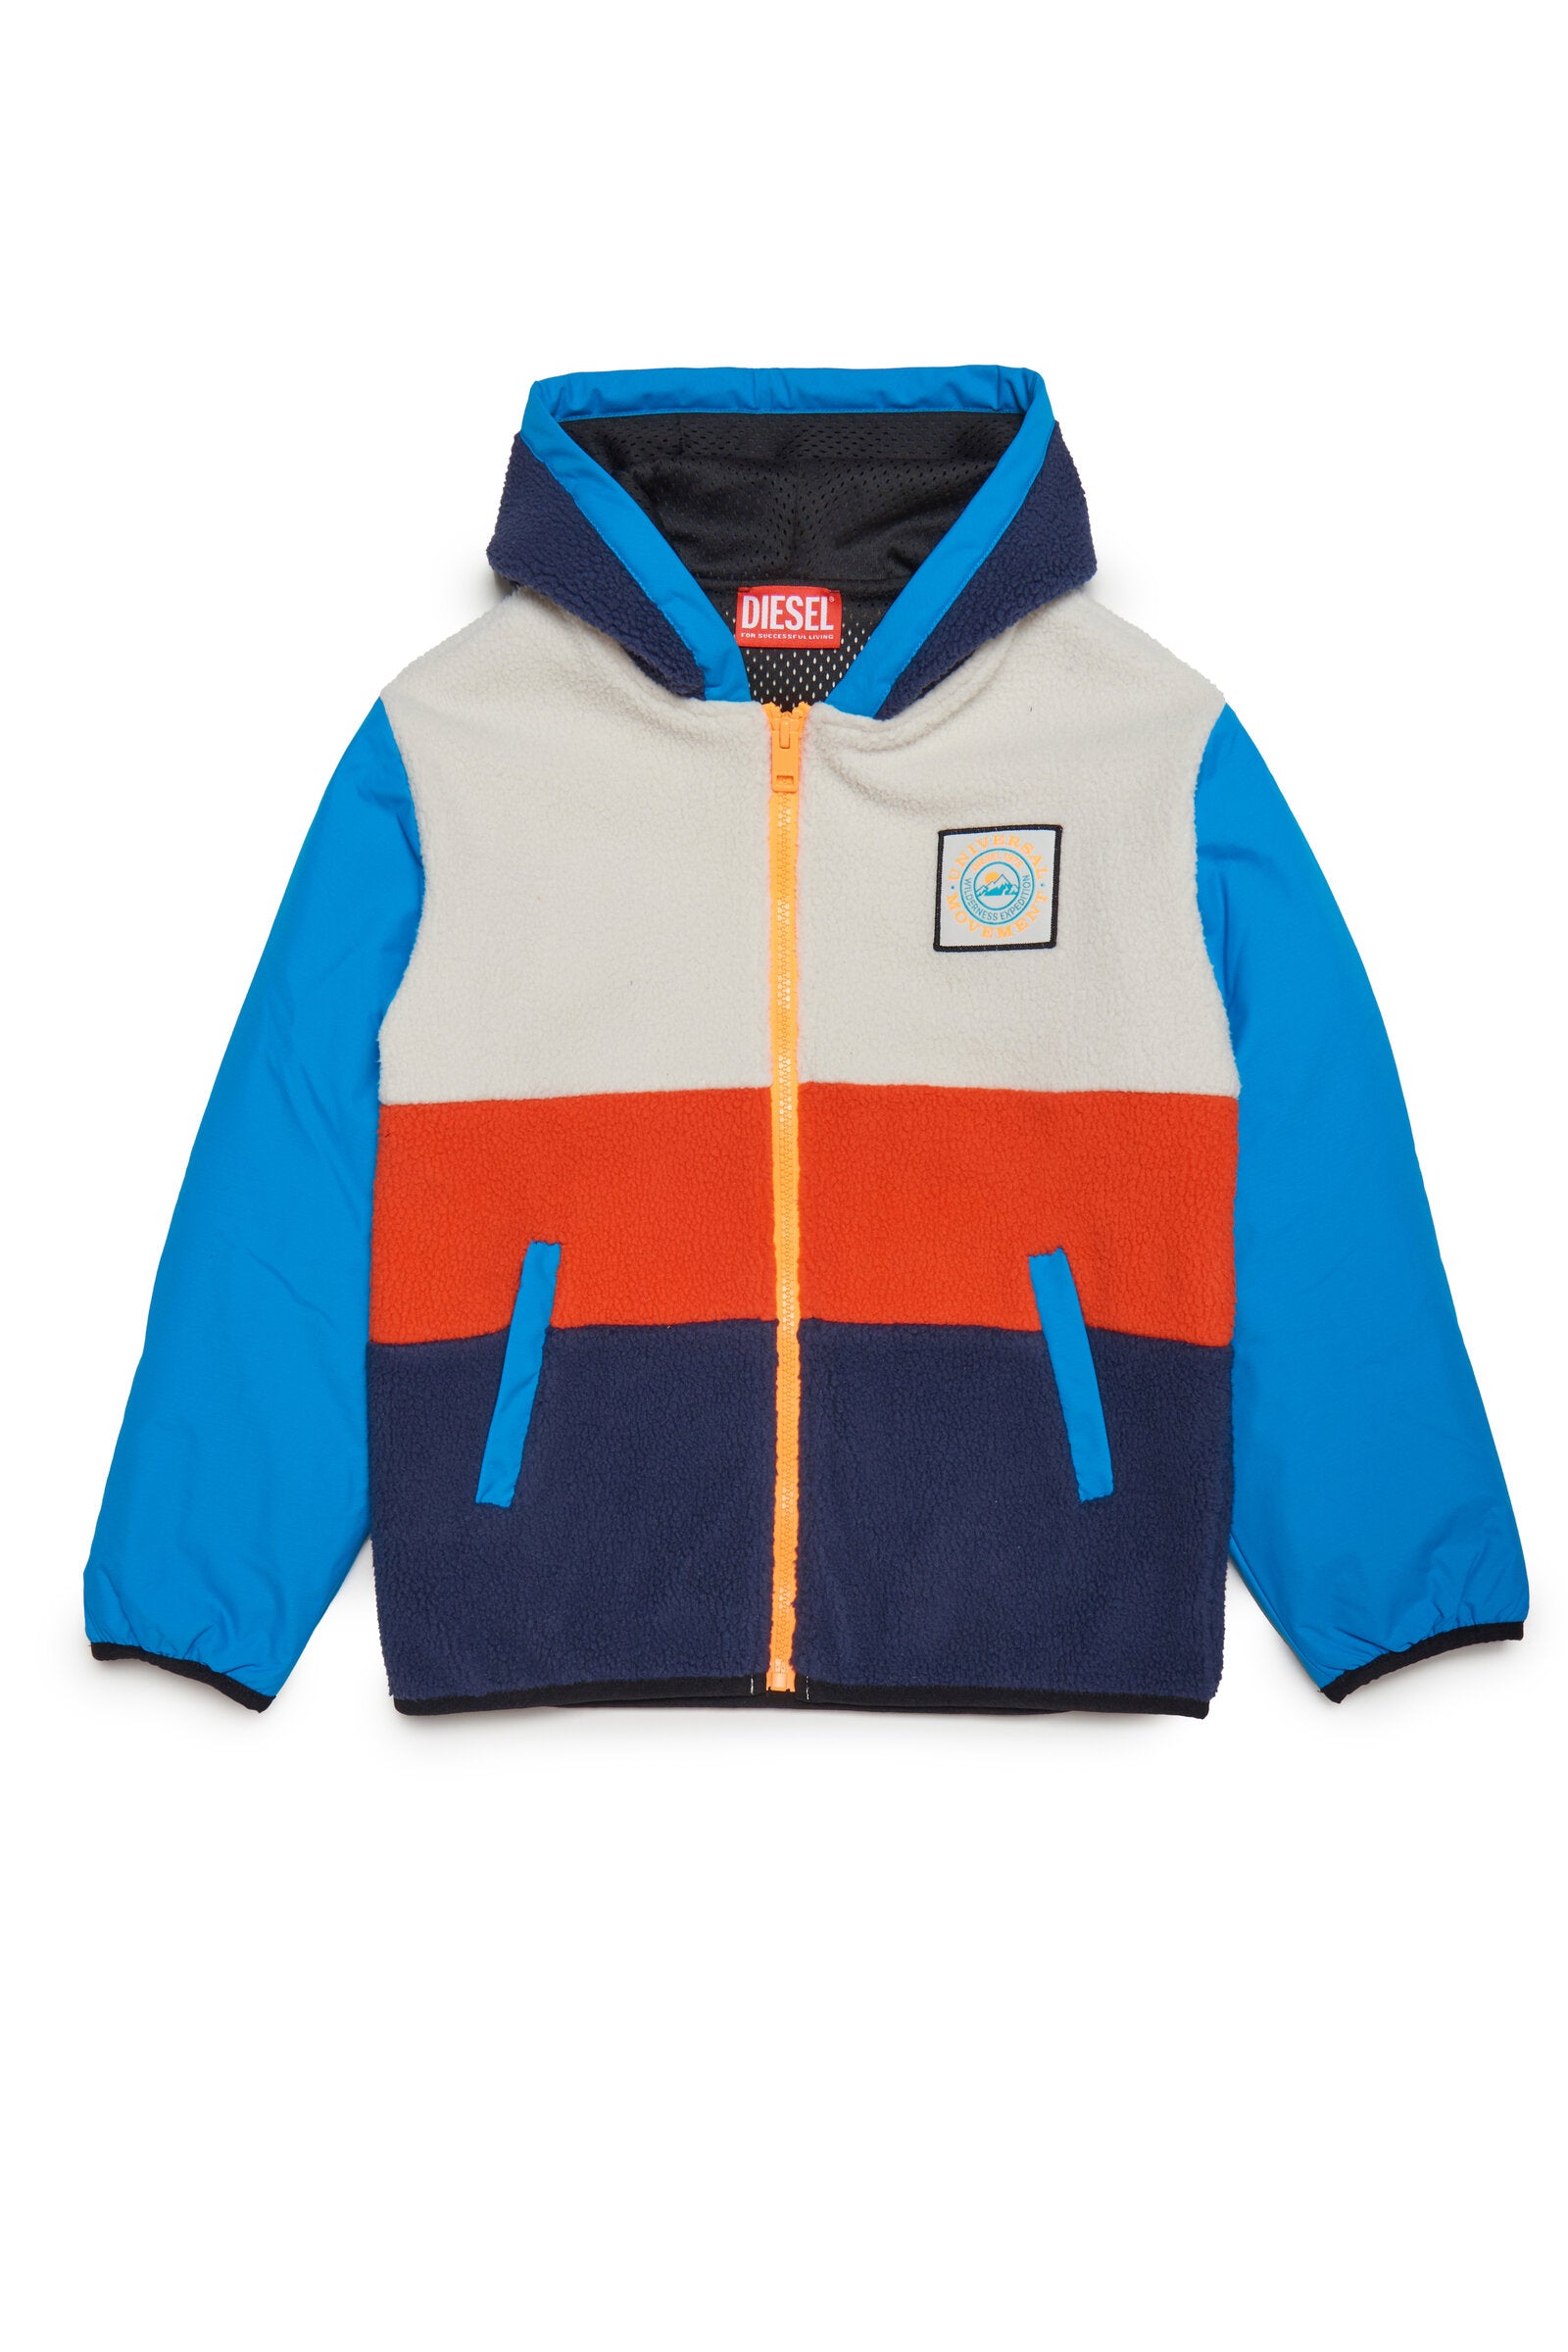 Outdoor hooded sherpa sweatshirt with zip